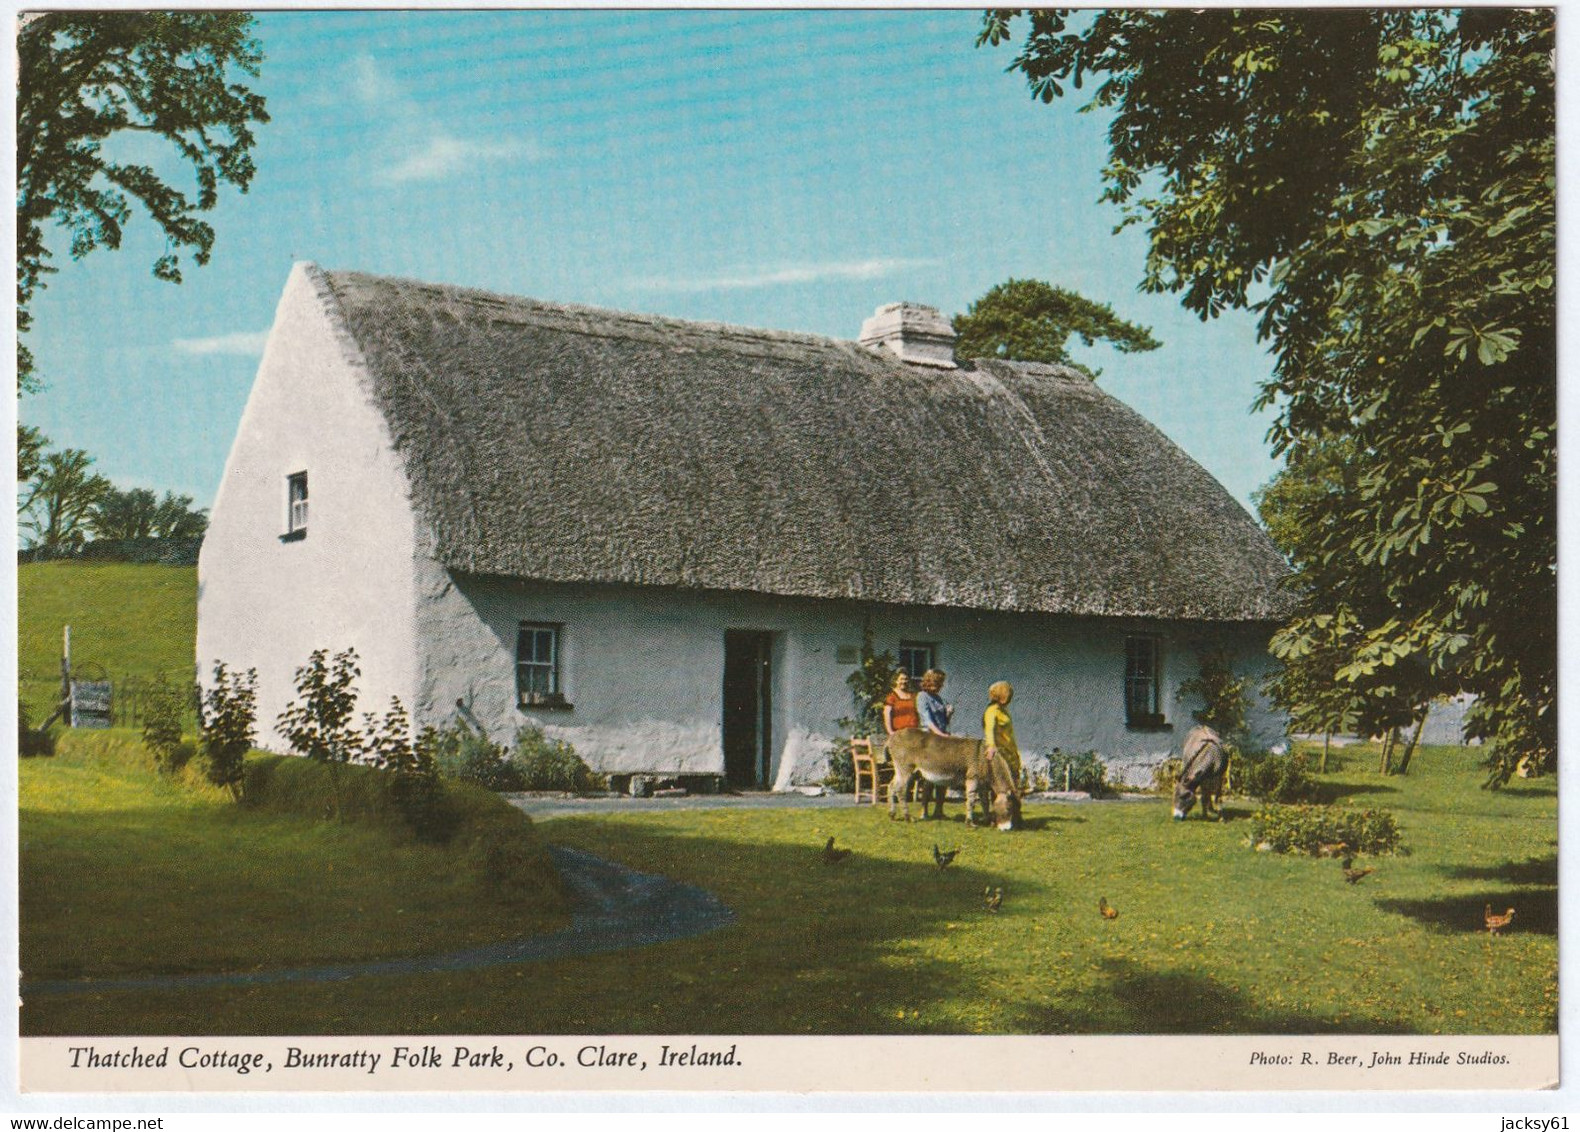 Shannon Farmhouse, Bunratty Folk Park, Co. Clare, Ireland - Clare